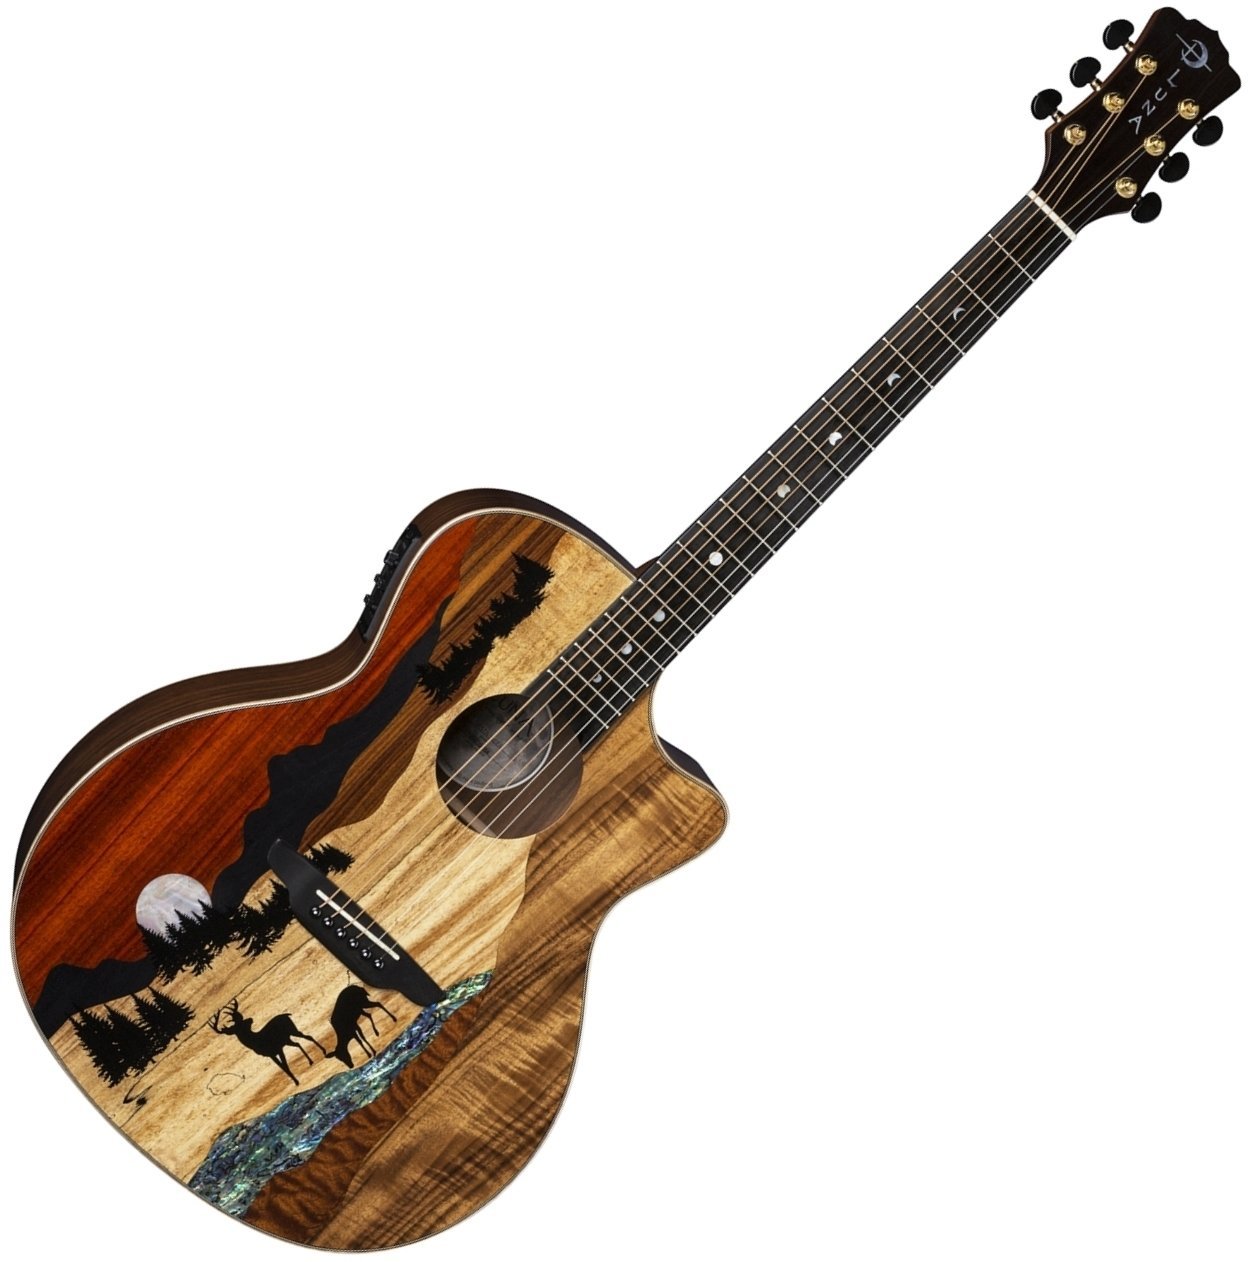 elektroakustisk guitar Luna Vista Deer Tropical Wood Deer motif on exotic marquetry